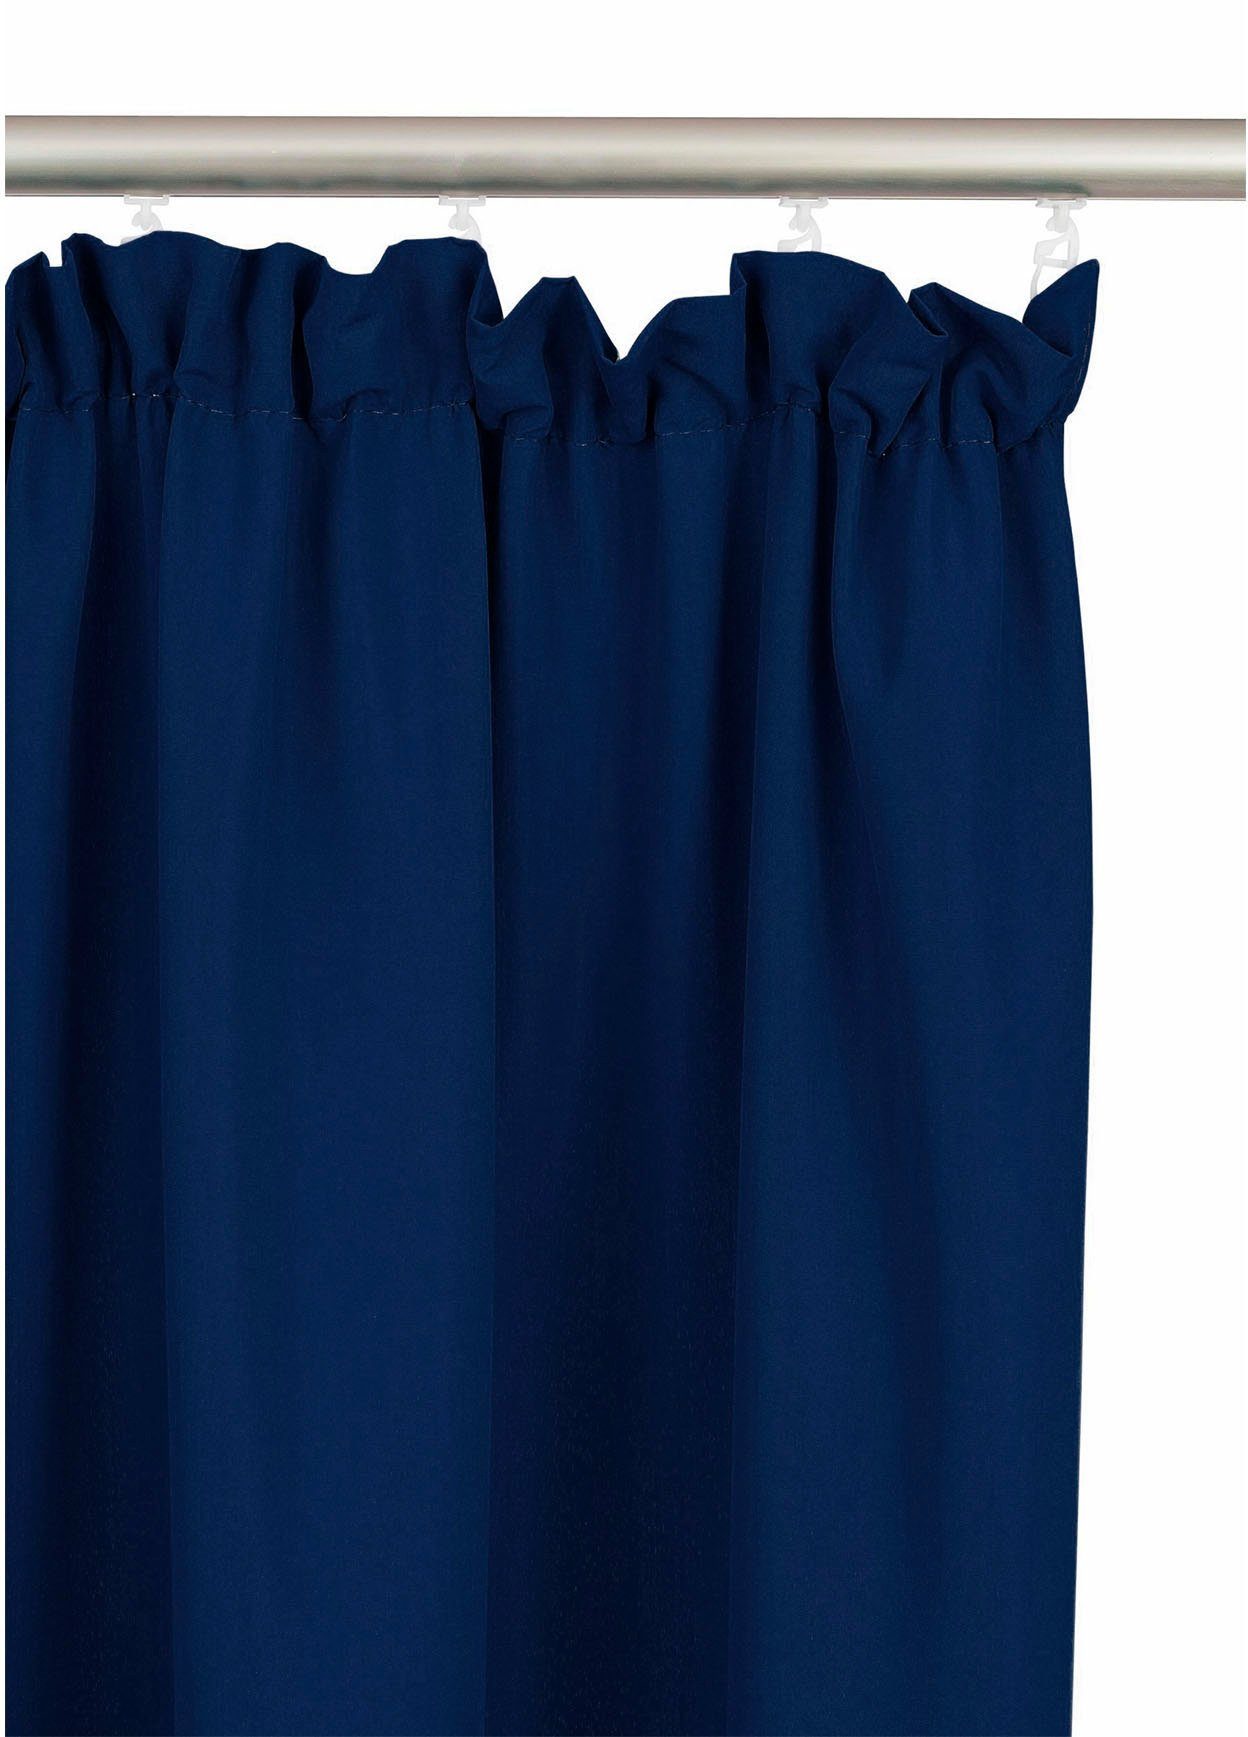 Bruno blickdicht, dunkelblau einfarbig Set, Lagan, (2 Polyester, Größen, verschiedene gewebt, Vorhang Banani, blickdicht, Microfaser, St), Kräuselband